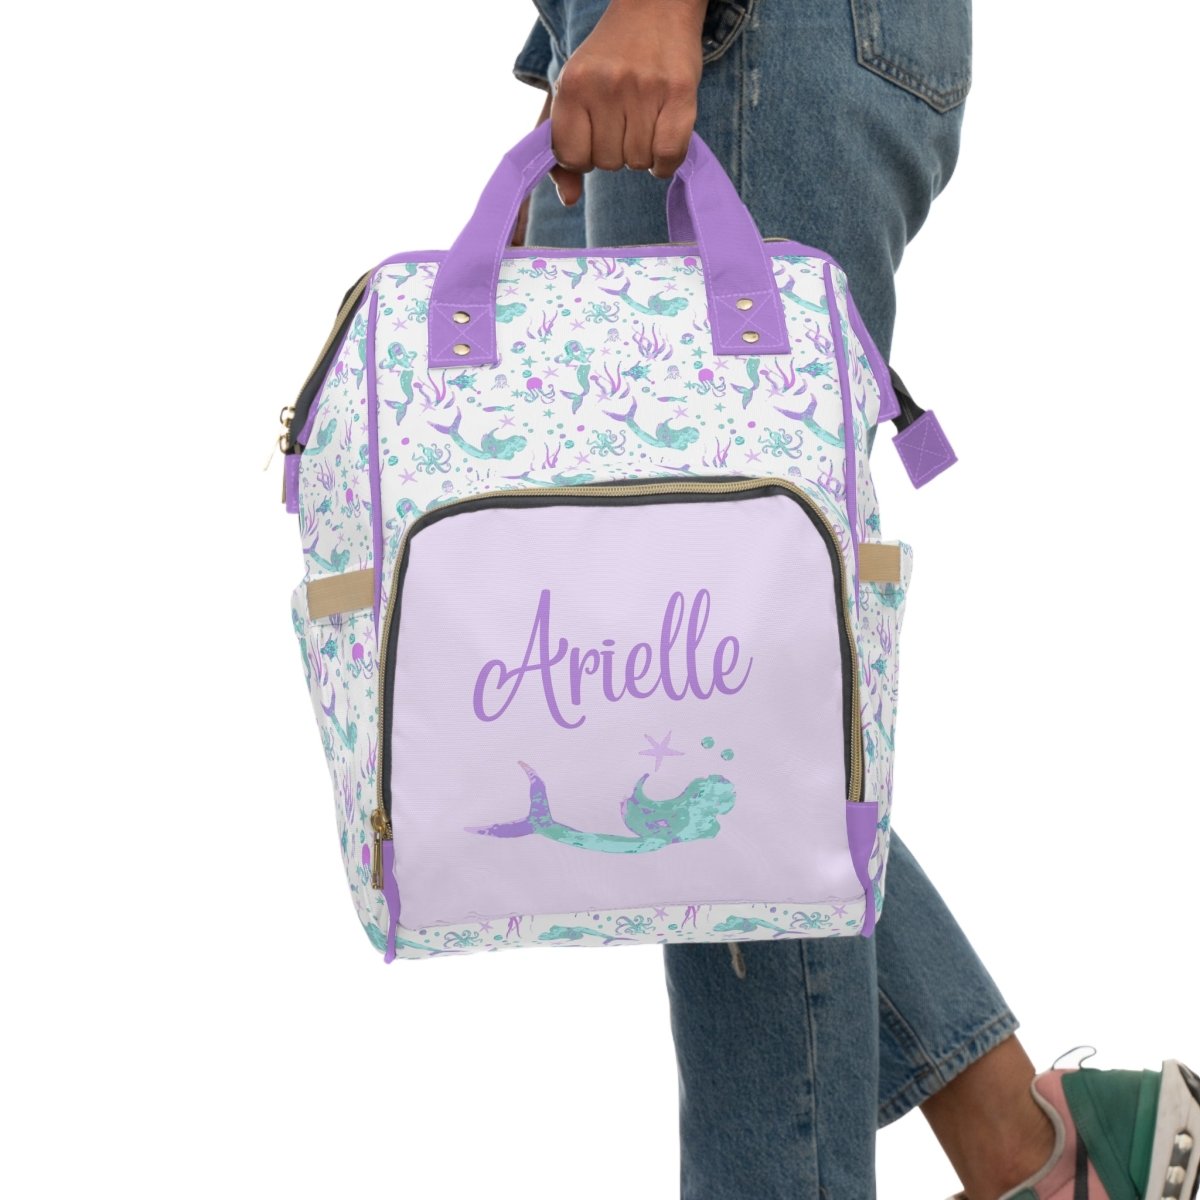 Jewel Mermaids Personalized Backpack Diaper Bag - Diaper Bag